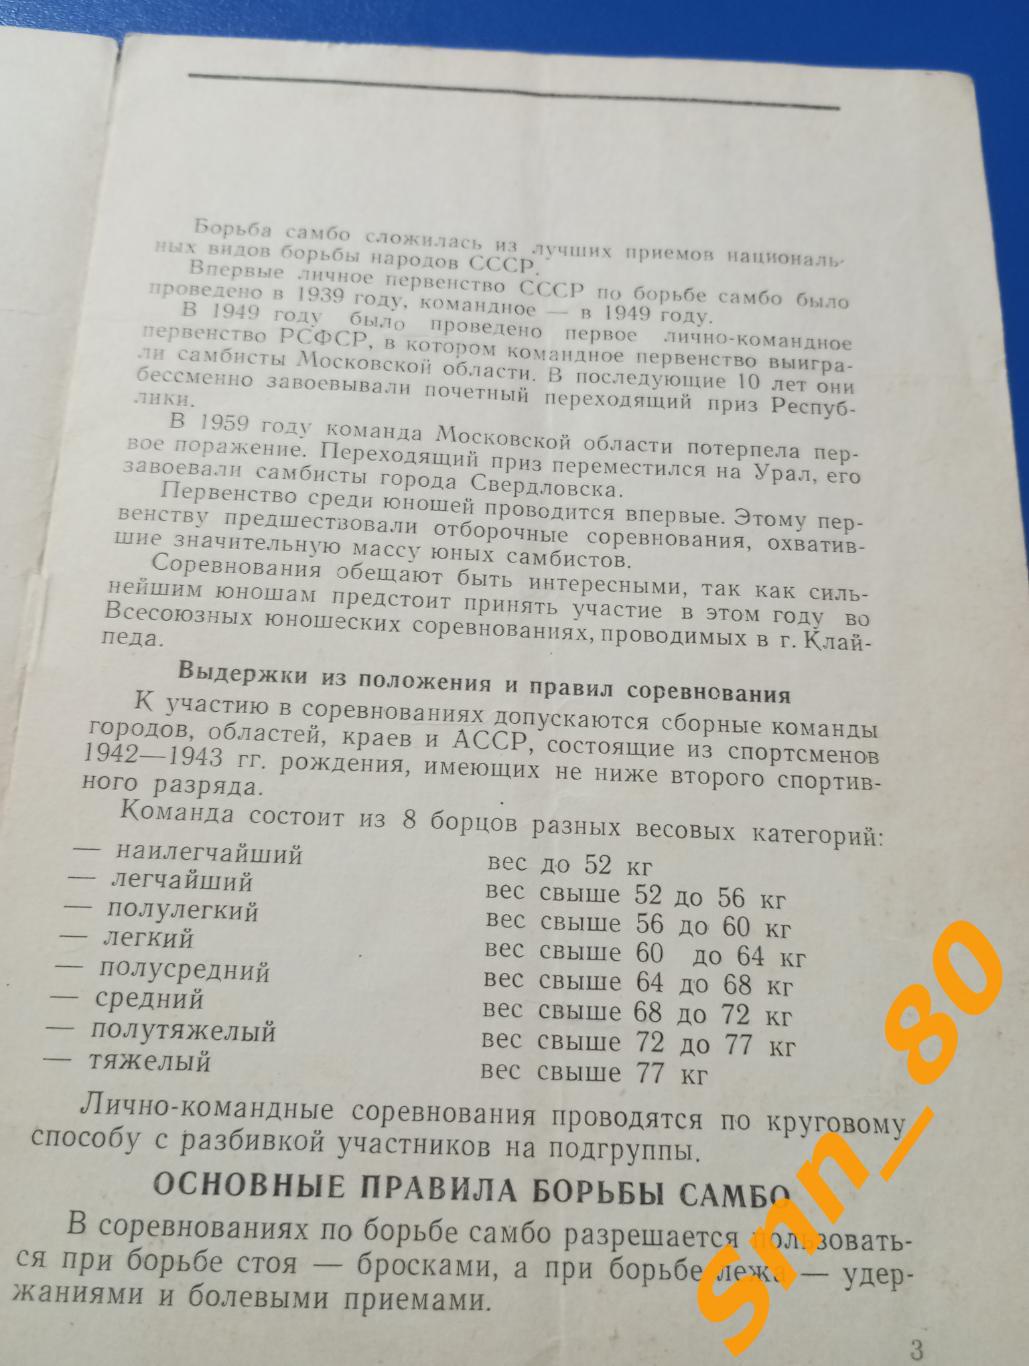 Борьба самбо Лично-командное первенство РСФСР среди юношей 1960 Смоленск 1